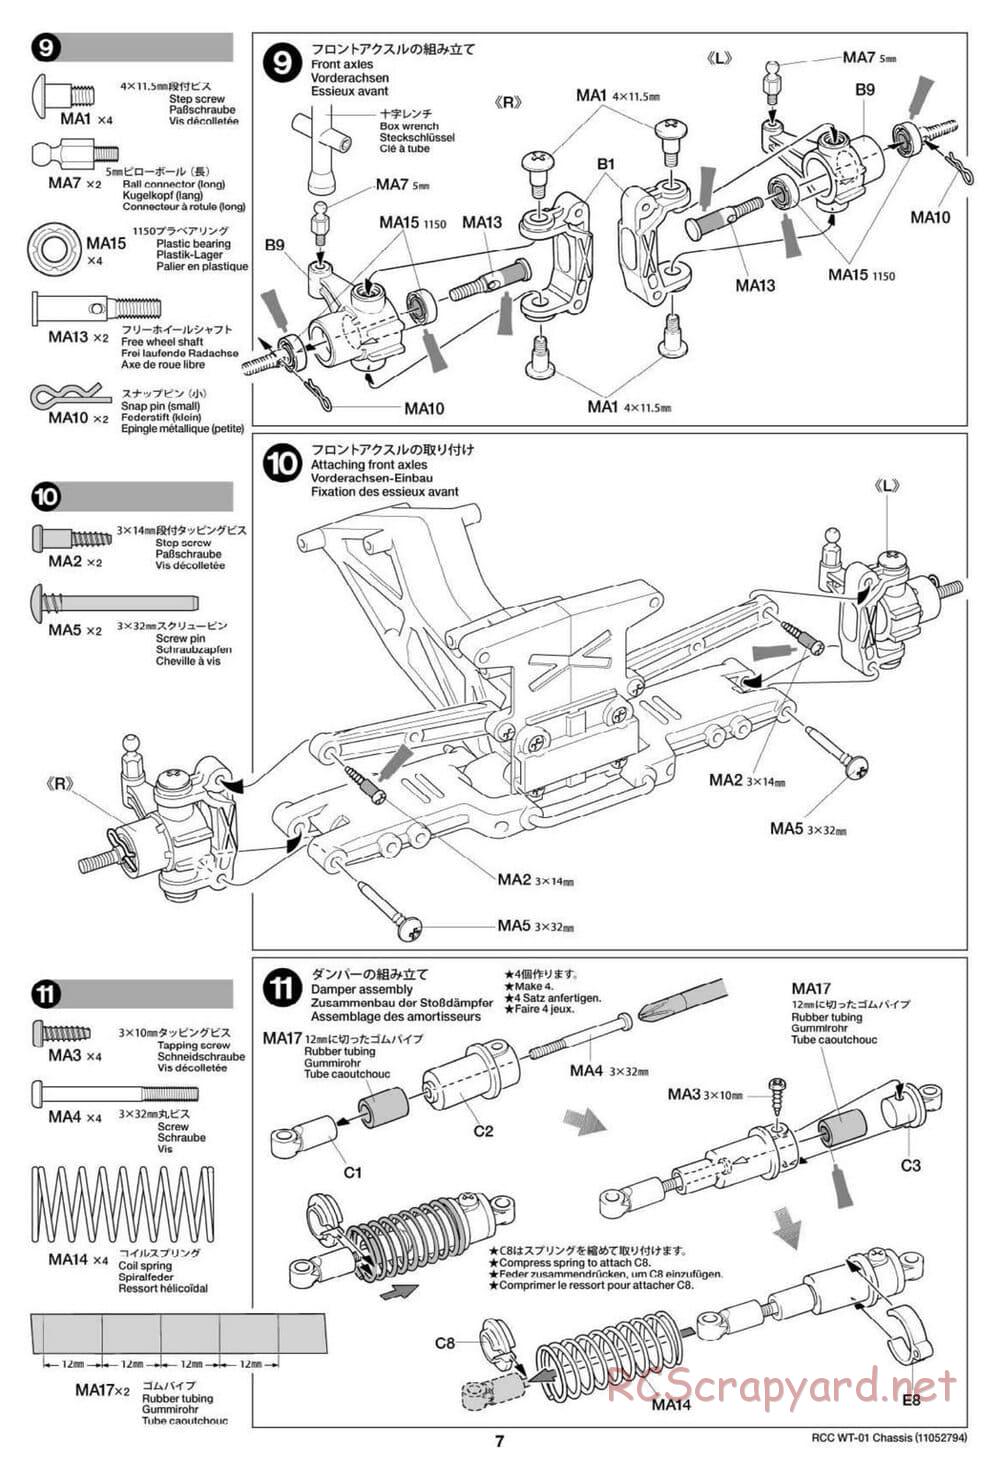 Tamiya - WT-01 Chassis - Manual - Page 7